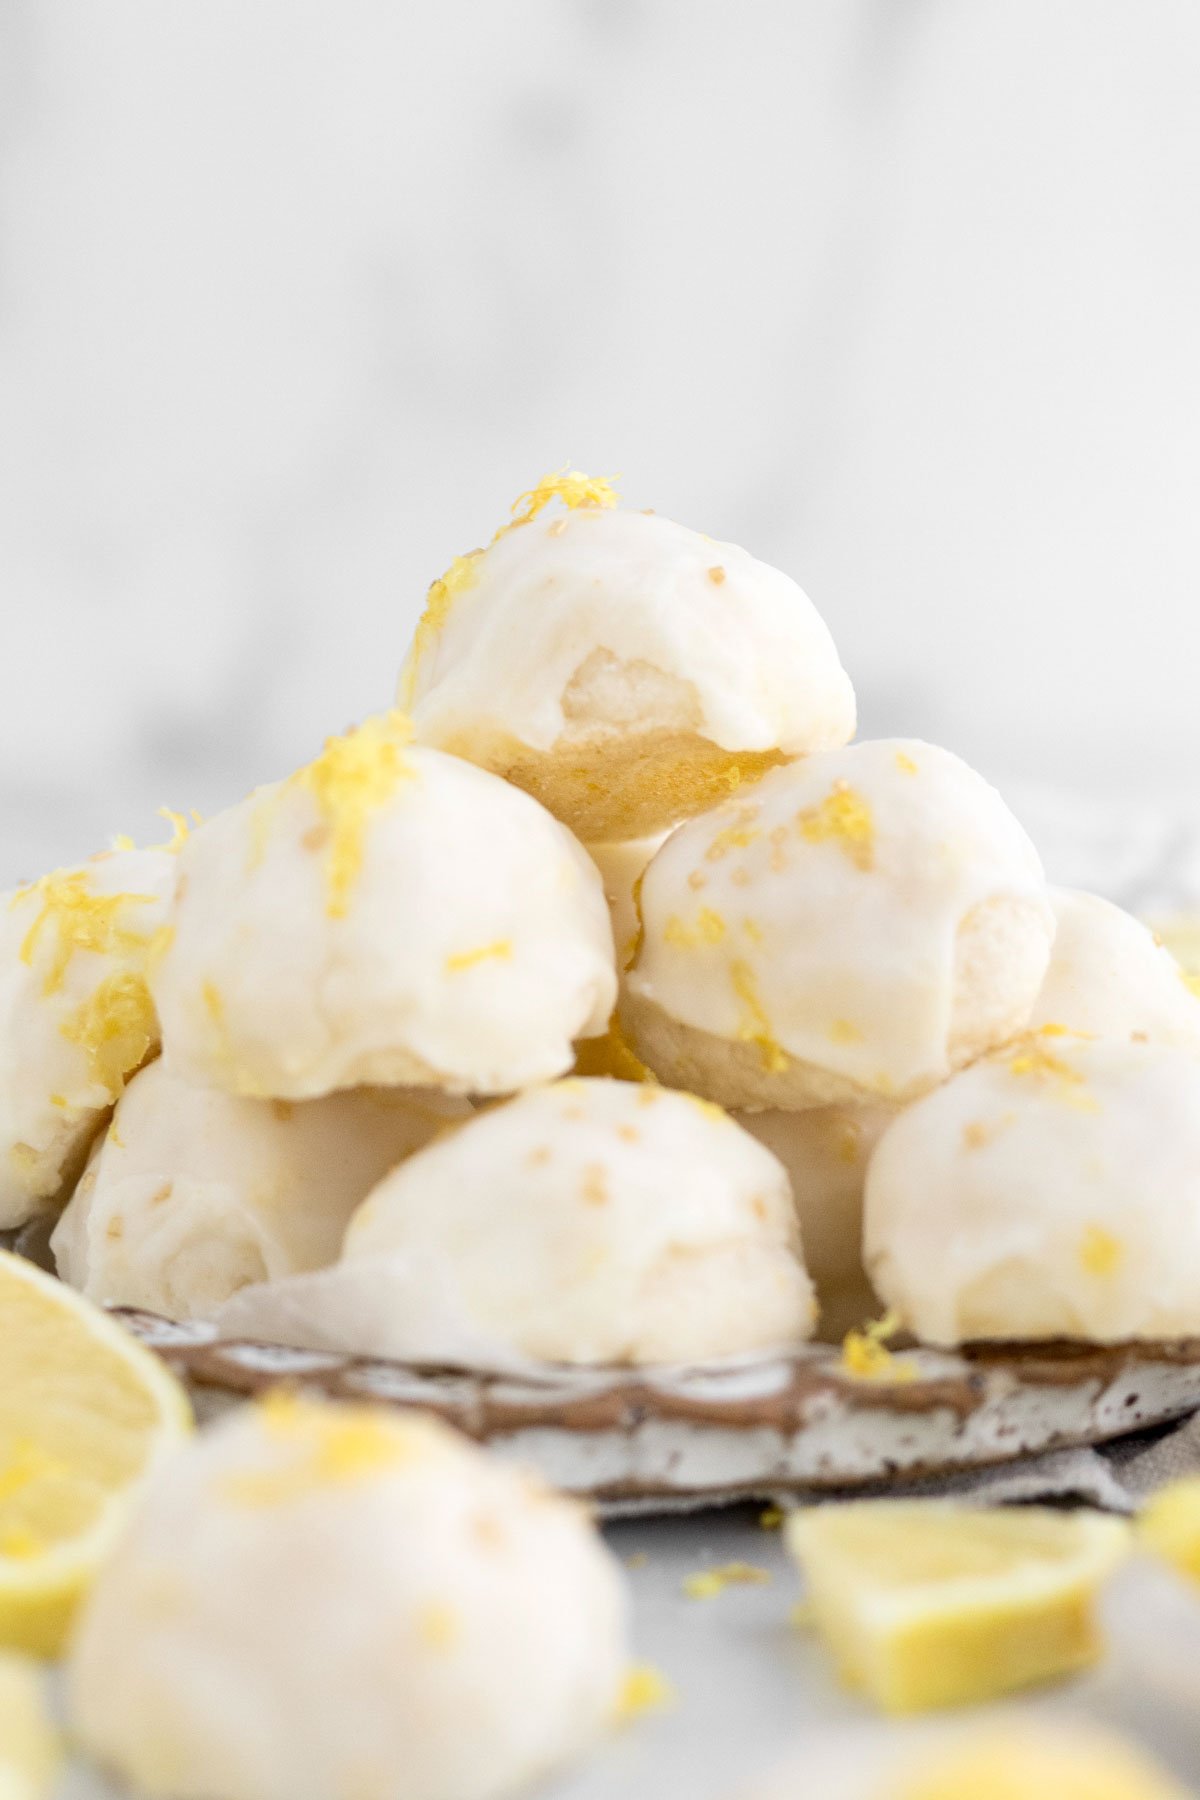 A plate overflowing with lemon glazed, sweet buttery balls of gluten free Lemon Shortbread Cookies.